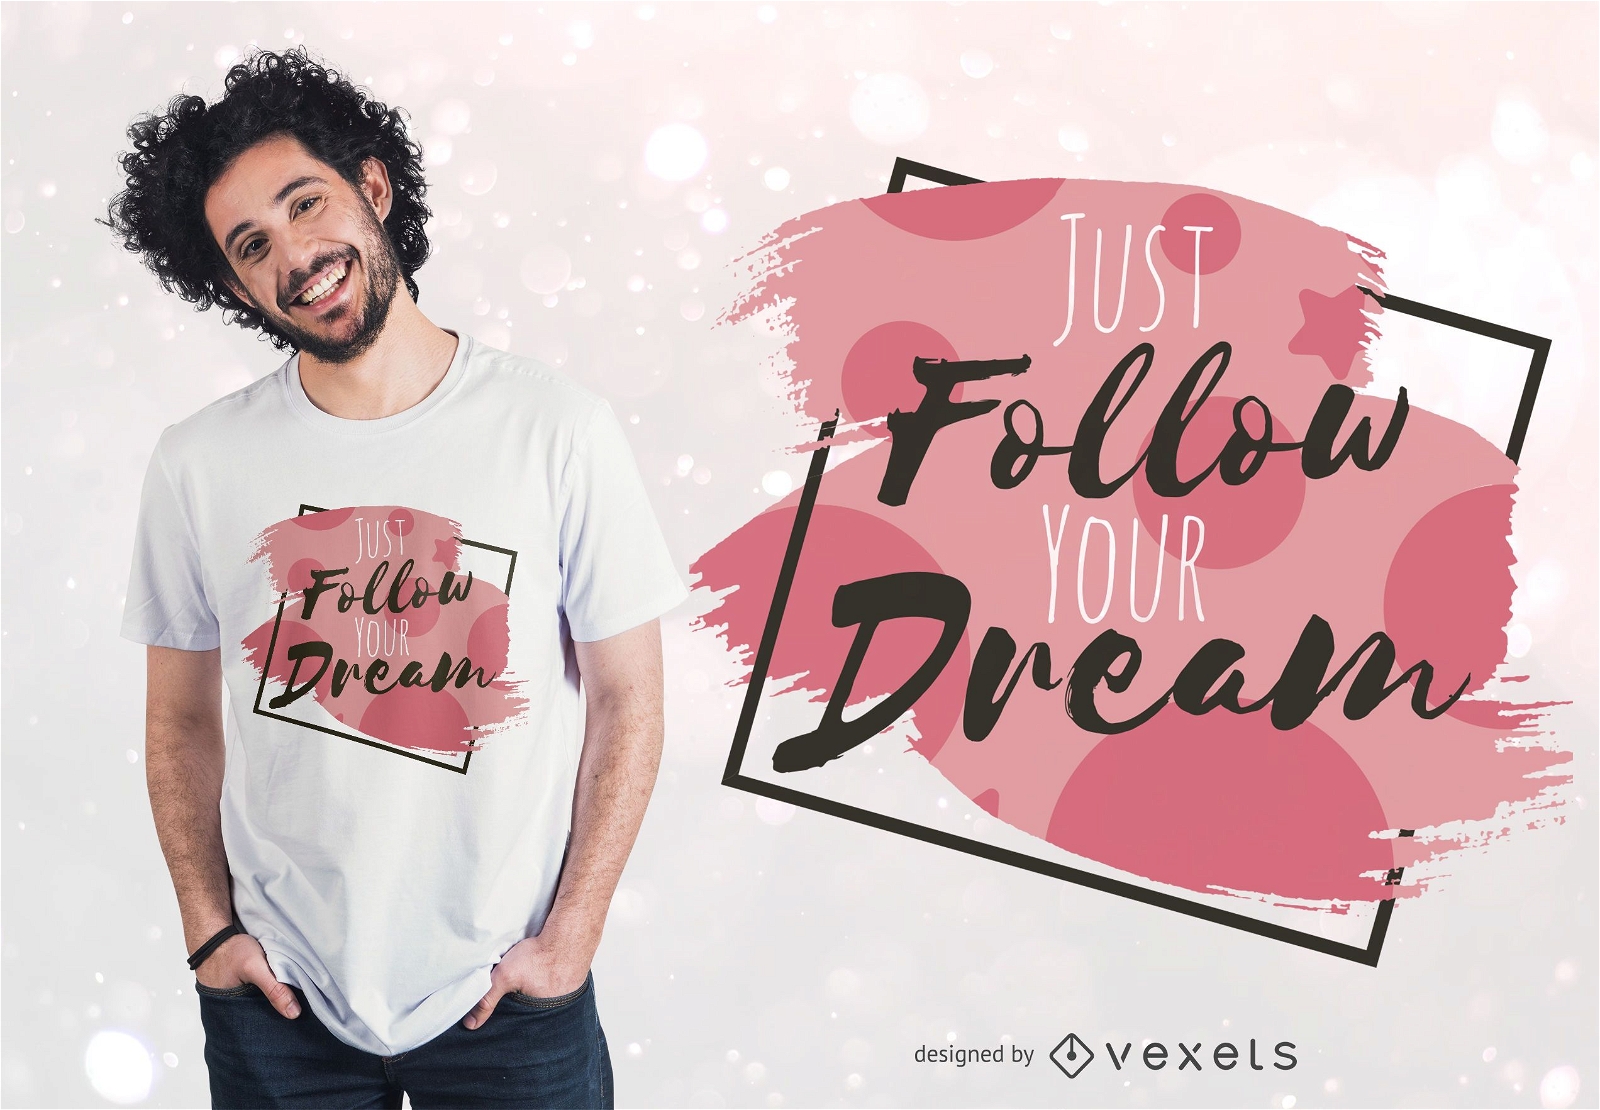 Follow your dream t-shirt design